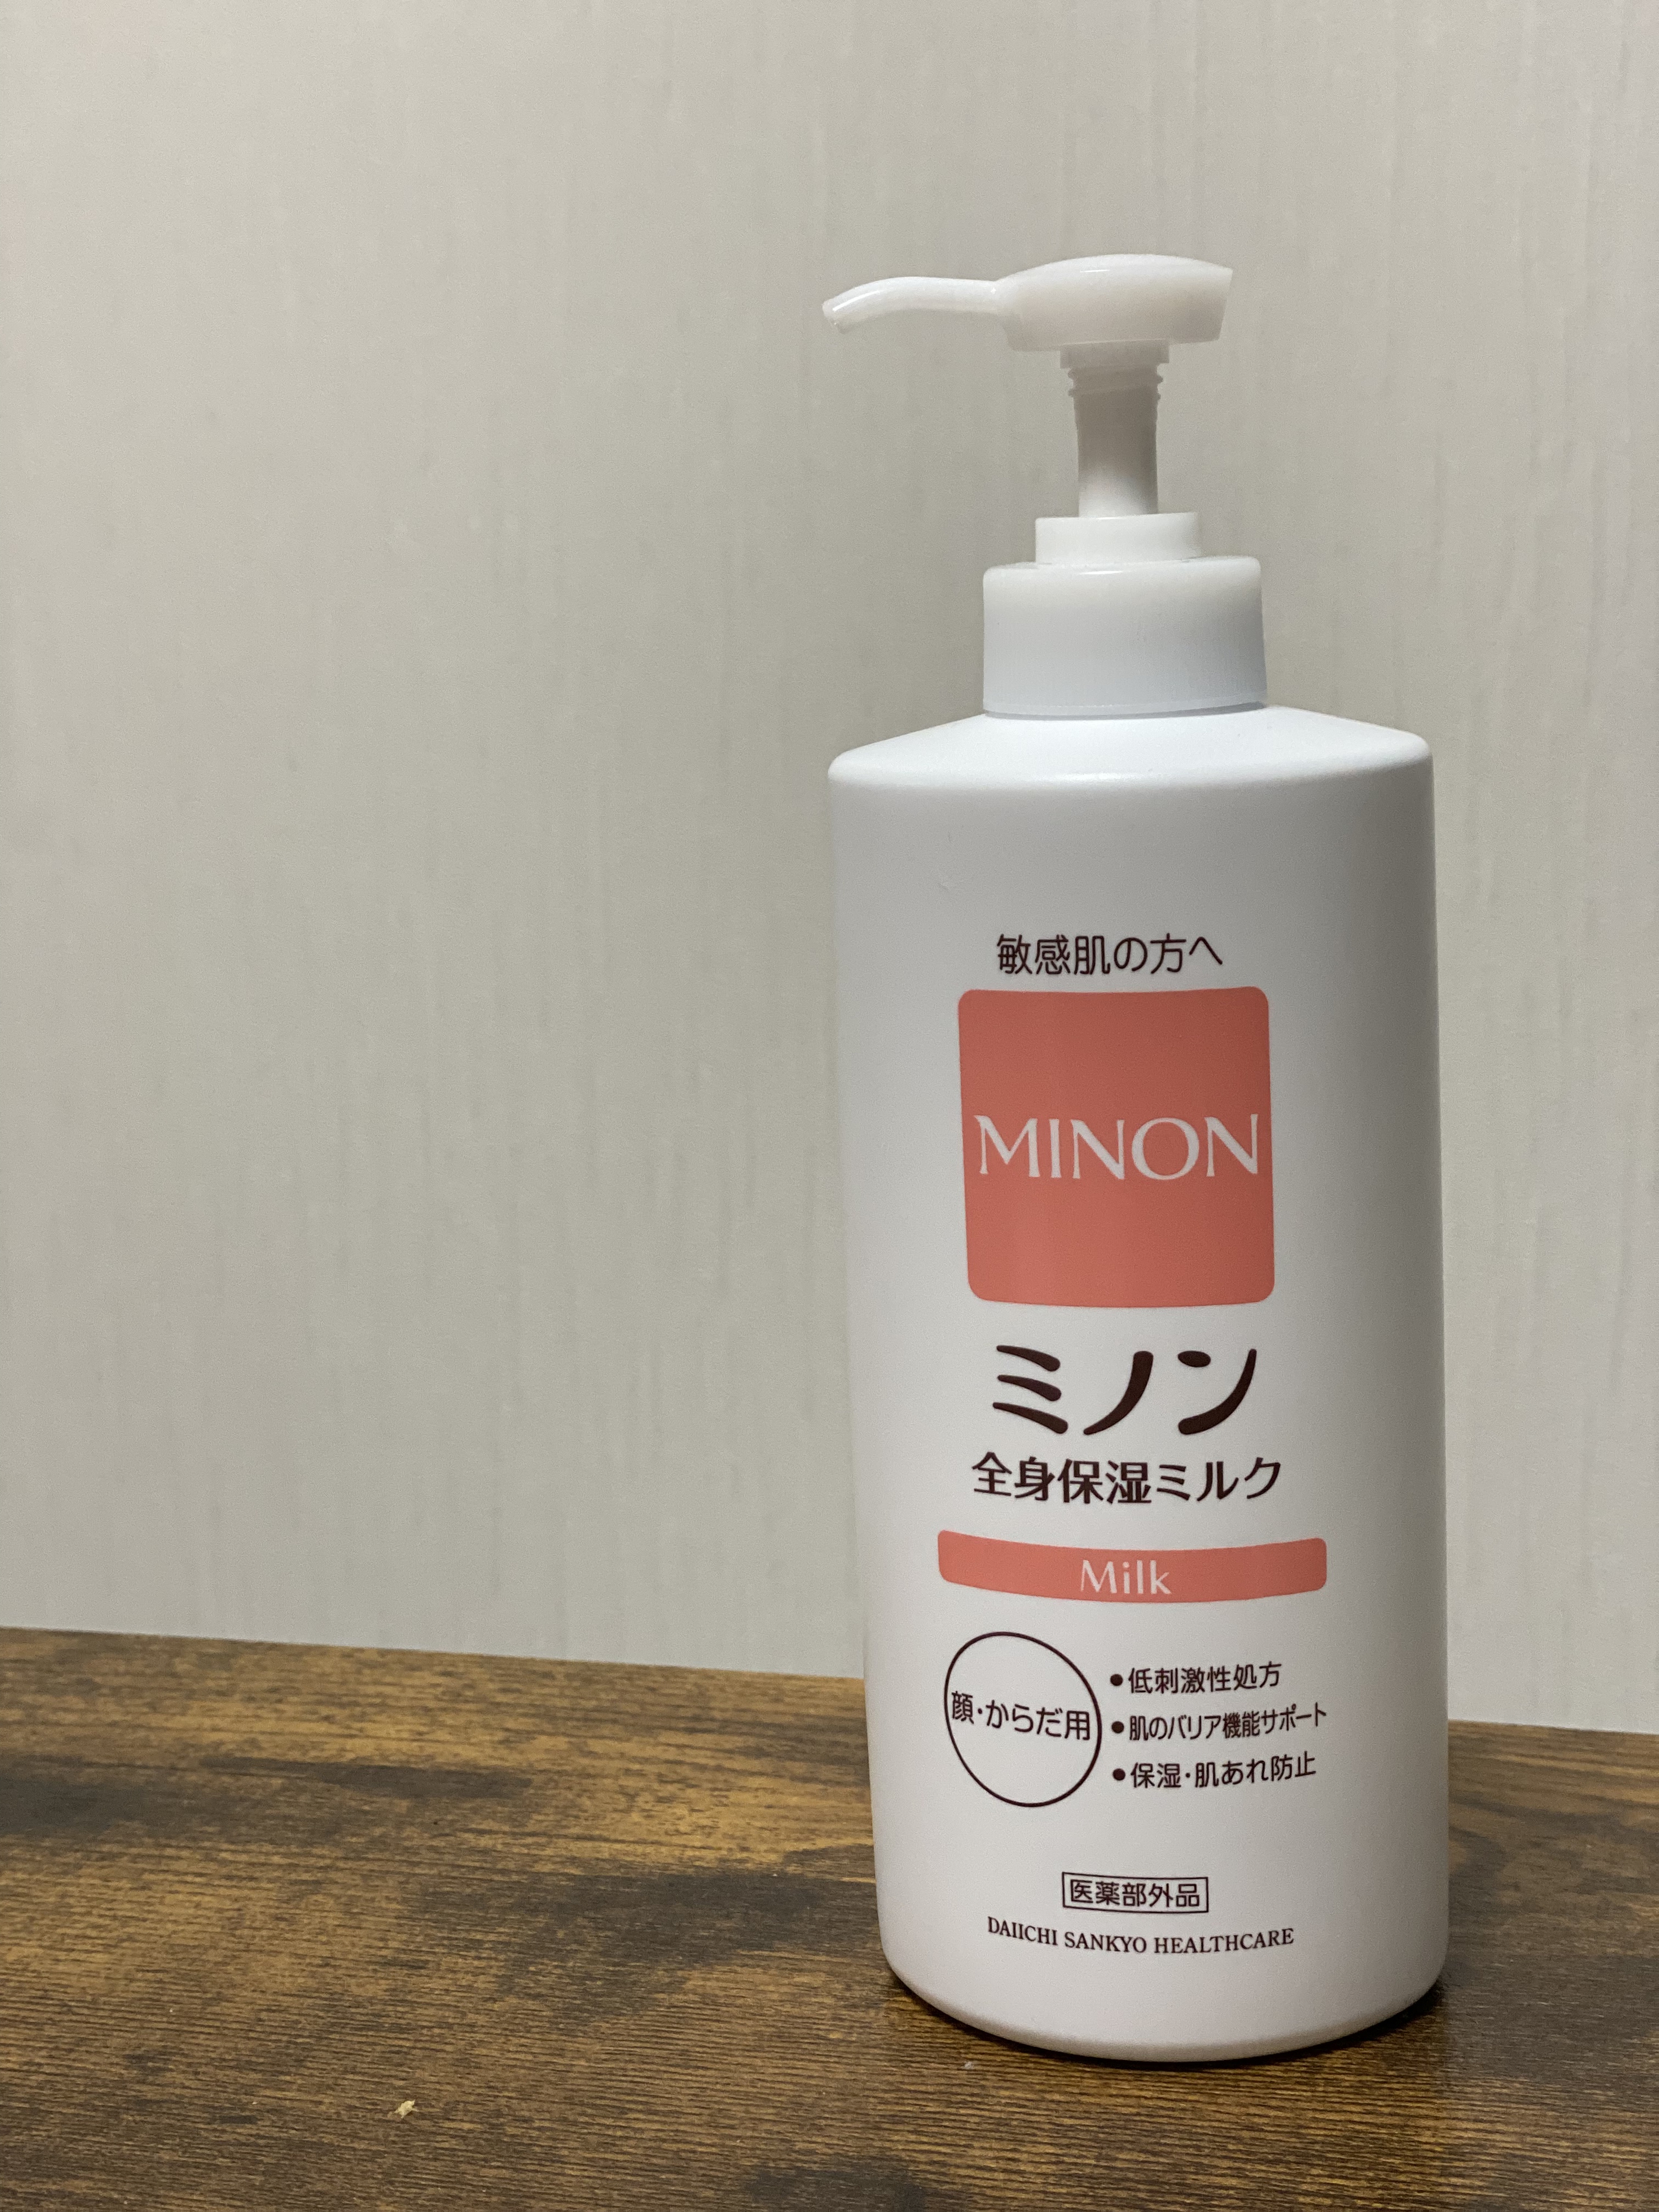 MINON(ミノン) 全身保湿ミルクの良い点・メリットに関するkimiさんの口コミ画像1